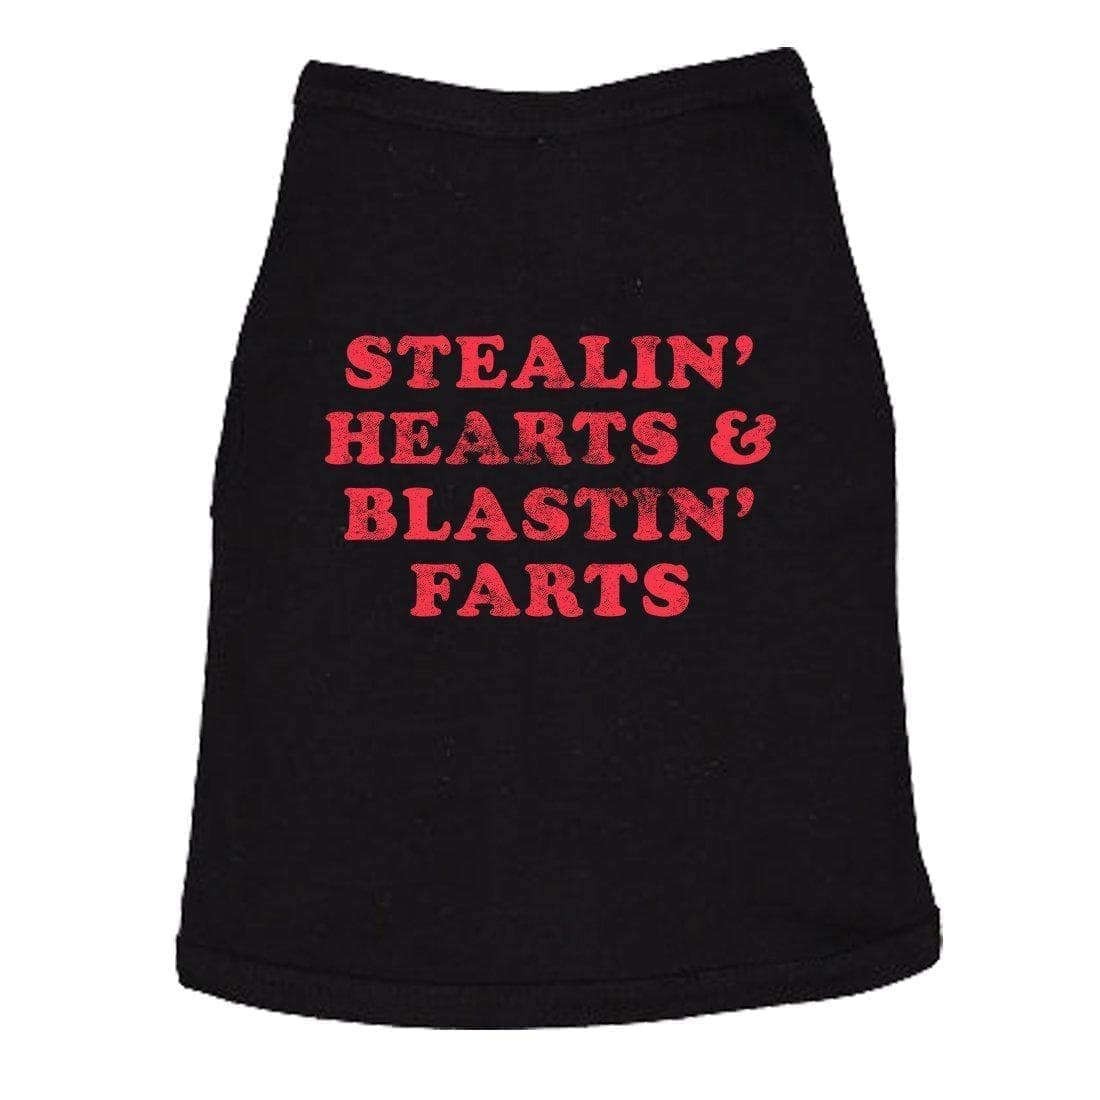 Stealin' Hearts And Blastin' Farts Dog Shirt - Crazy Dog T-Shirts